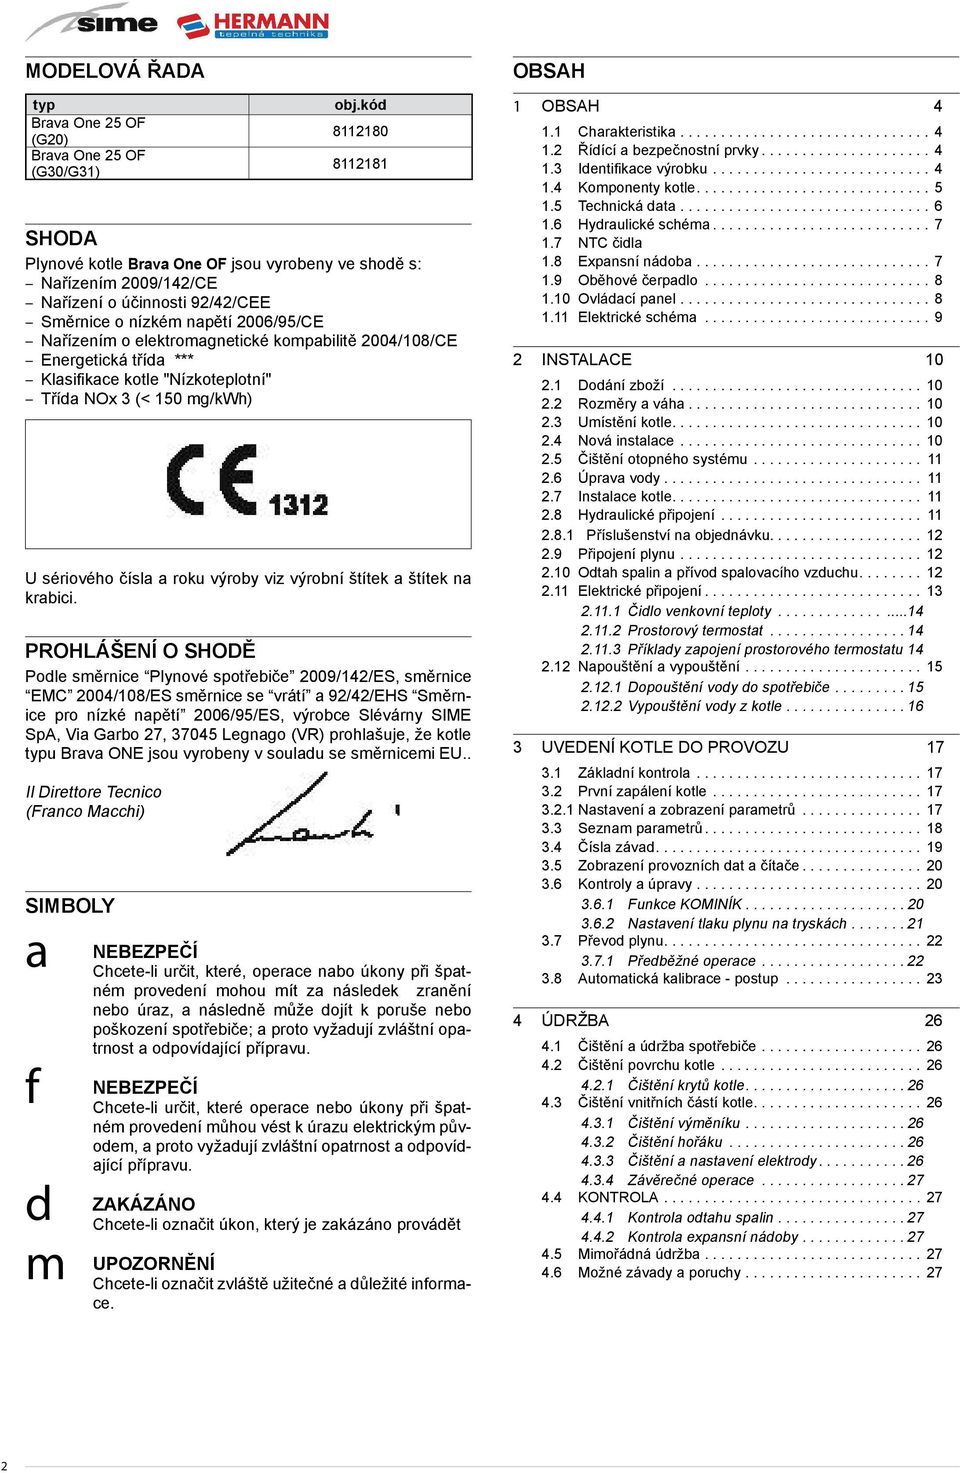 kompabilitě 2004/108/CE Energetická třída *** Klasifikace kotle "Nízkoteplotní" Třída NOx 3 (< 150 mg/kwh) U sériového čísla a roku výroby viz výrobní štítek a štítek na krabici.